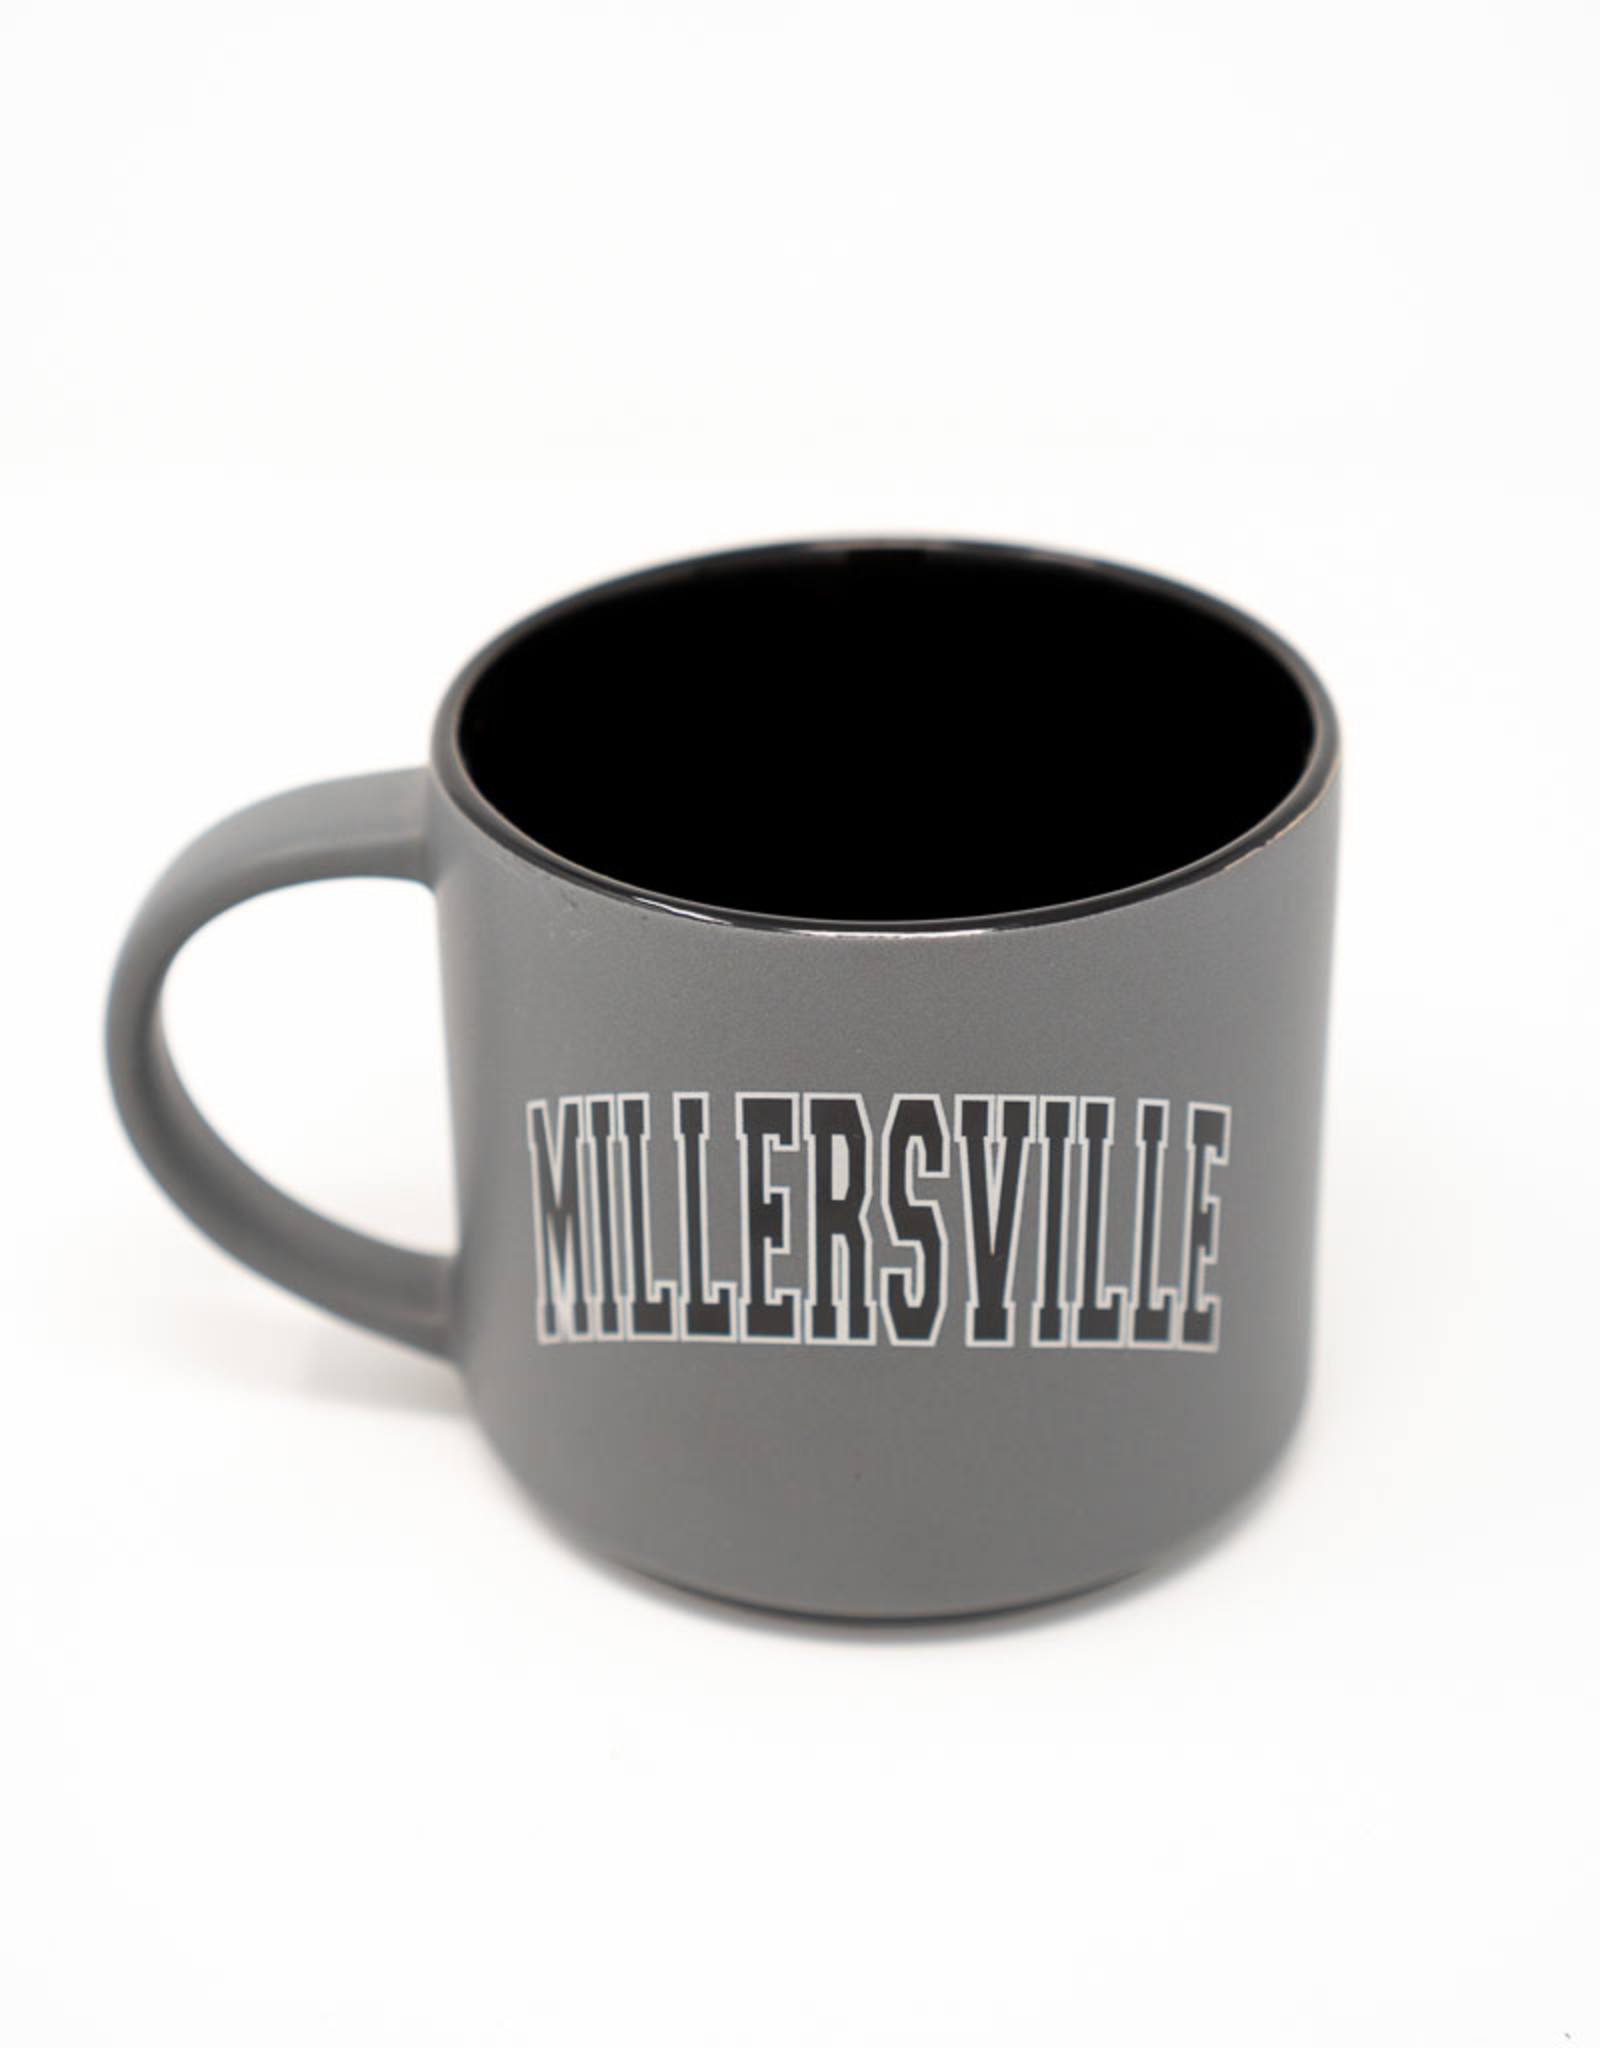 Millersville - Graphite Mug